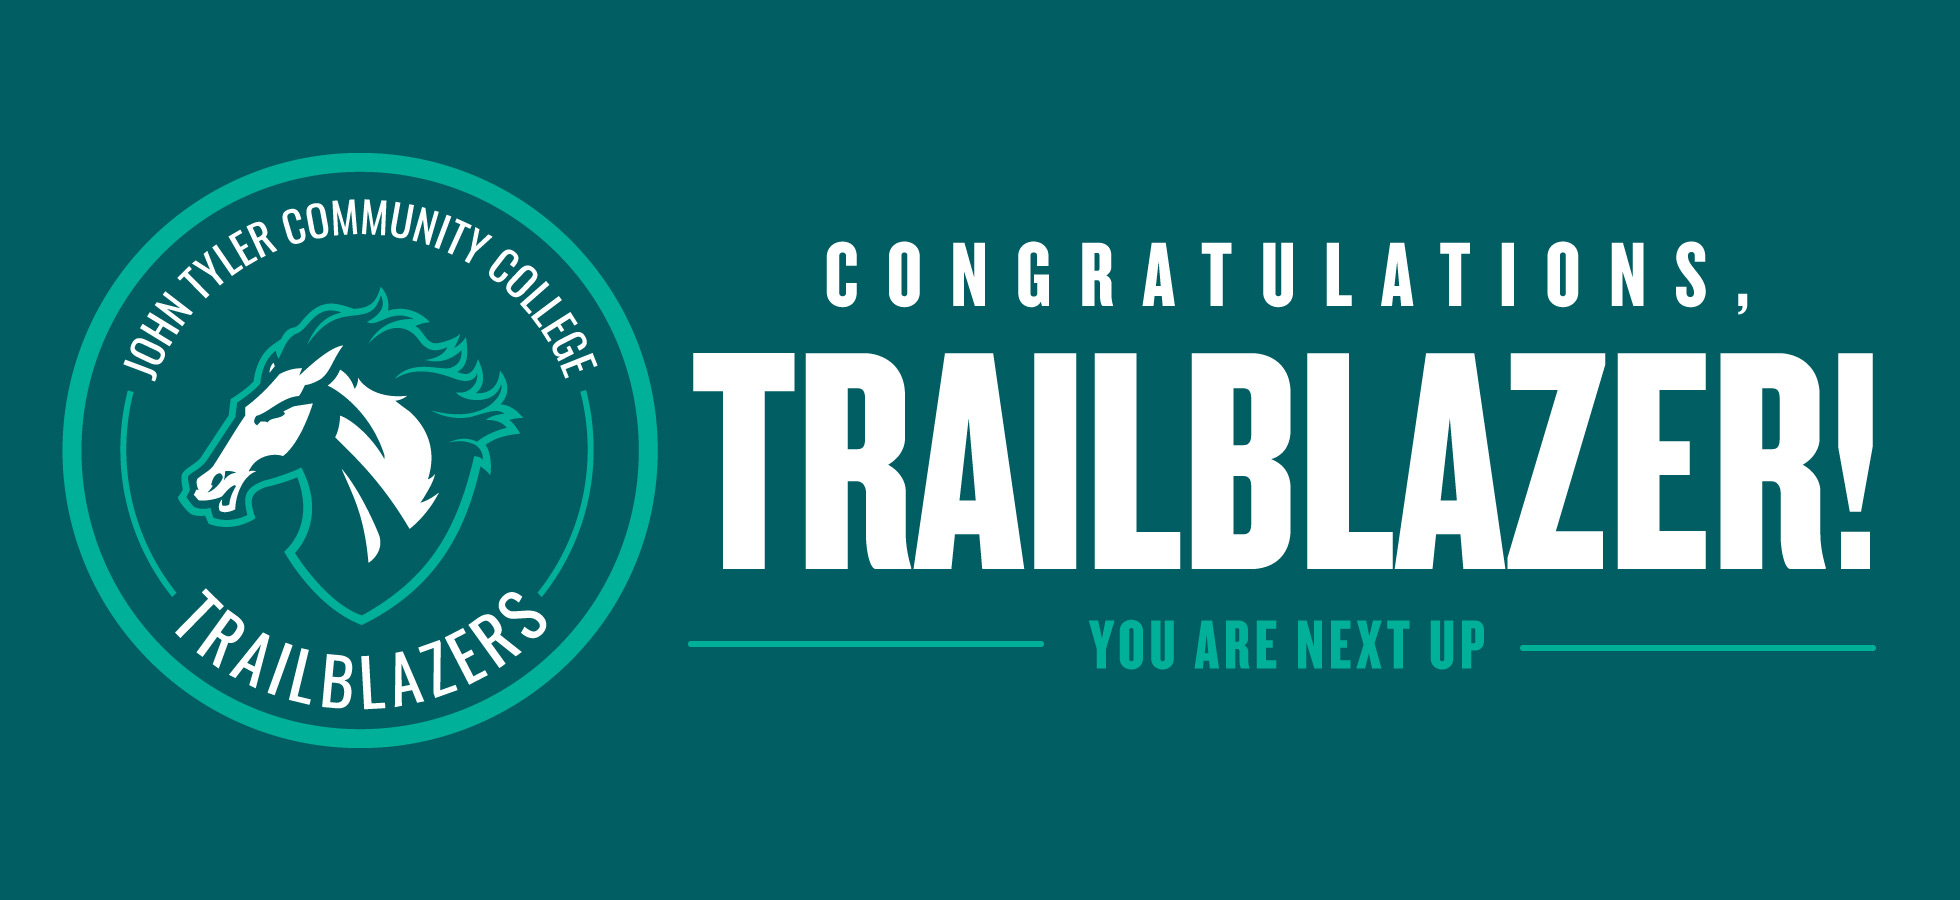 Congratulations Trailblazer! You are next up.